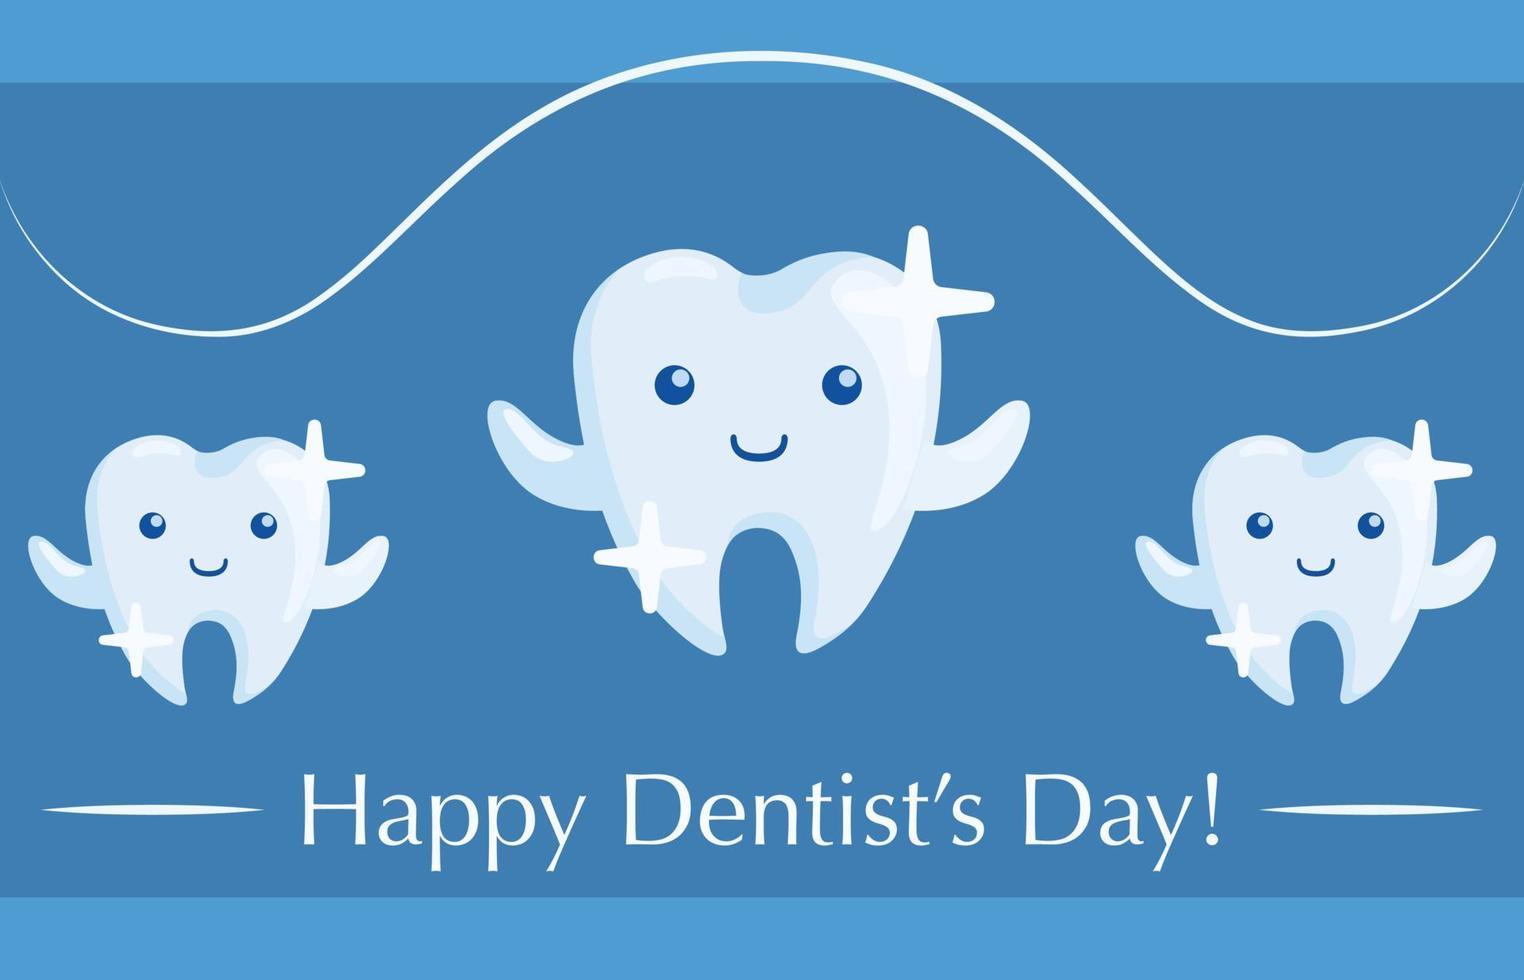 internationell tandläkarens dag vykort, affisch, hälsning och inbjudan kort med tre tänder, tecken med känslor, leende och blinkning. vektor illustration för tandläkarens dag professionell Semester.